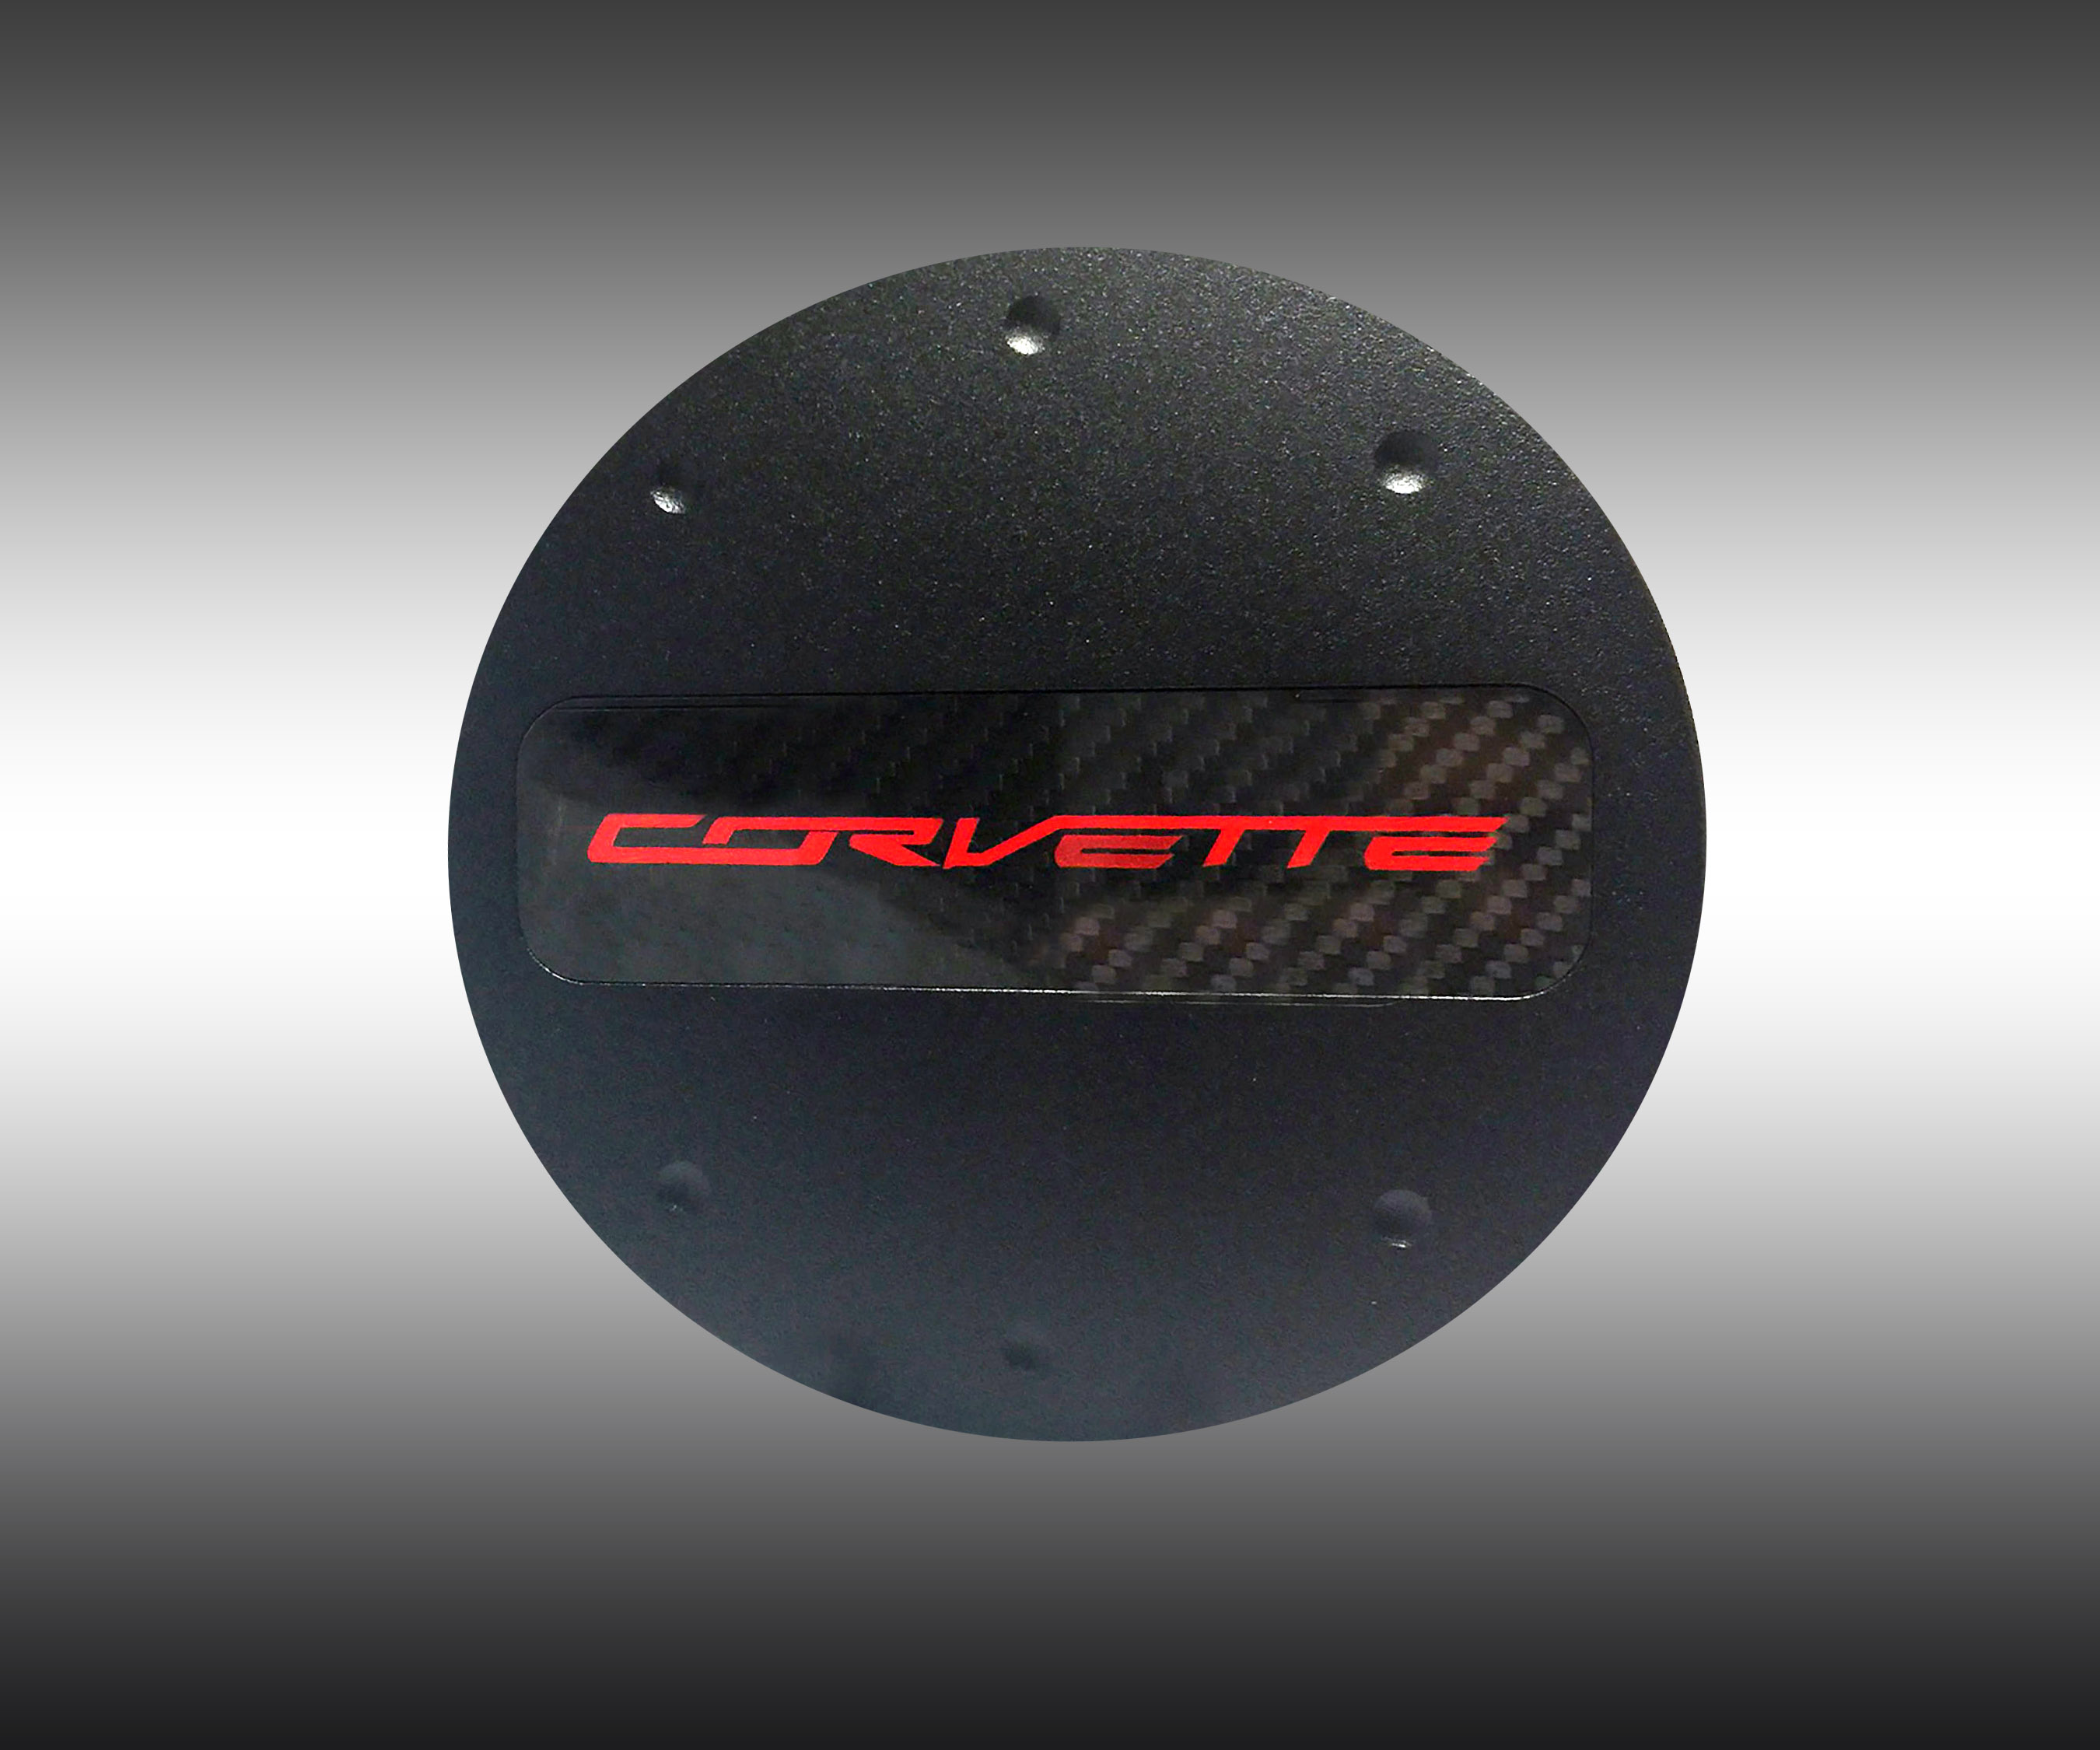 C7 Corvette Locking Fuel Door, Matte Black, Red "Corvette" Logo on Carbon Fiber